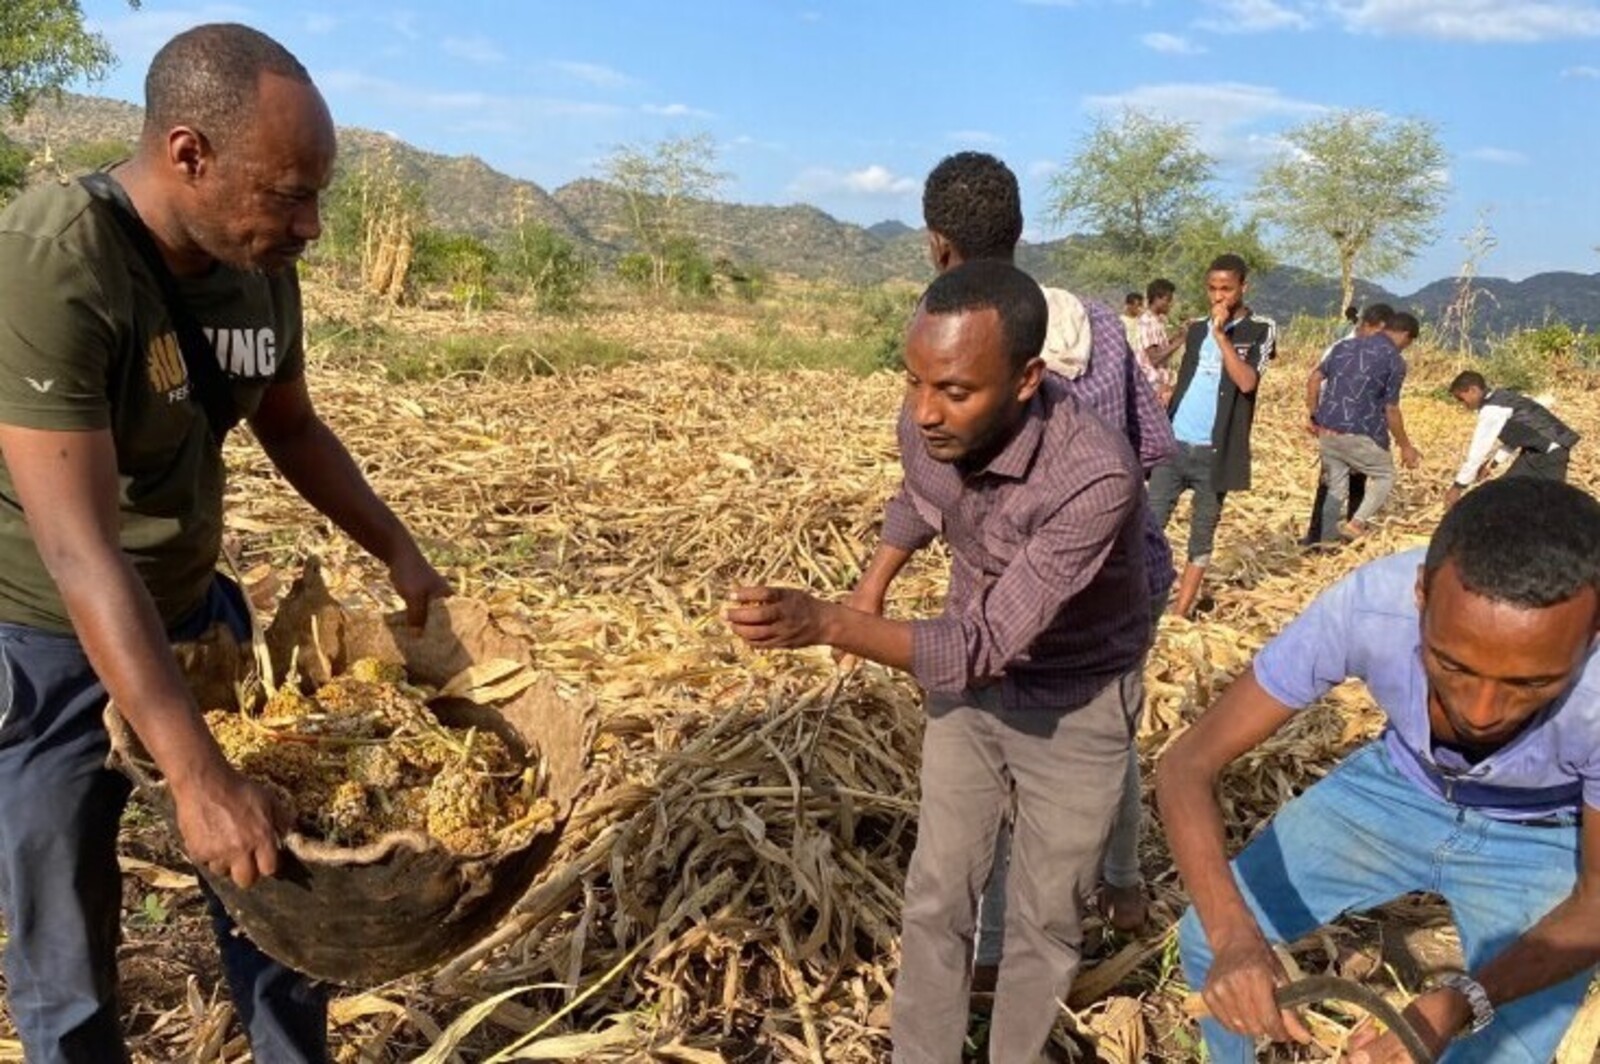 Hilfsprojekt für Landwirte in Äthiopien, wo eine Heuschreckenplage herrscht